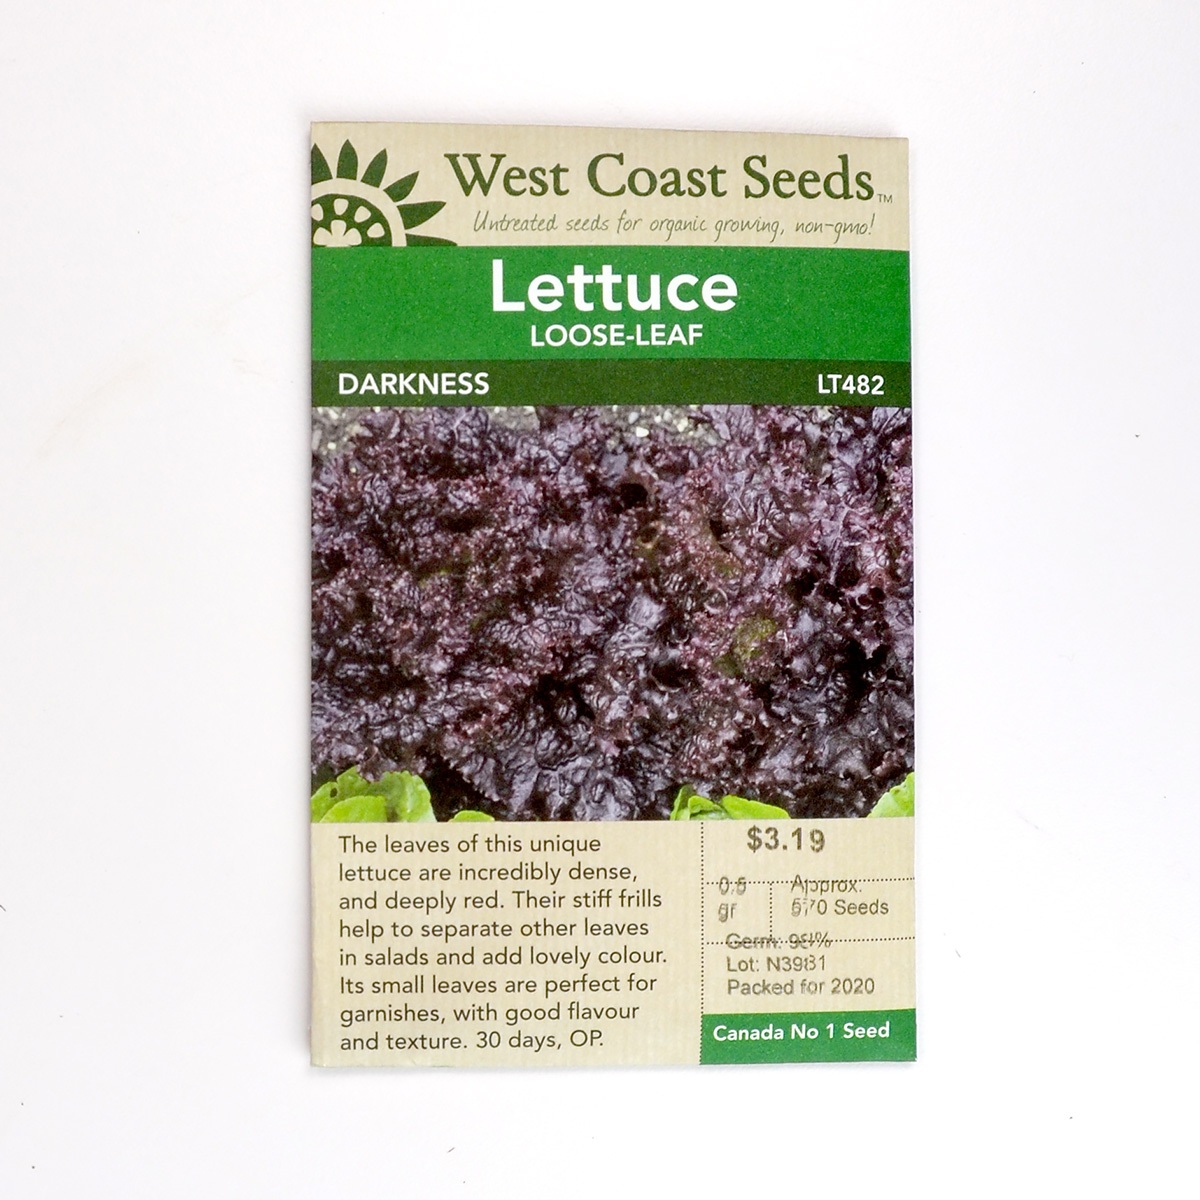 Lettuce Loose-Leaf Darkness Seeds LT482